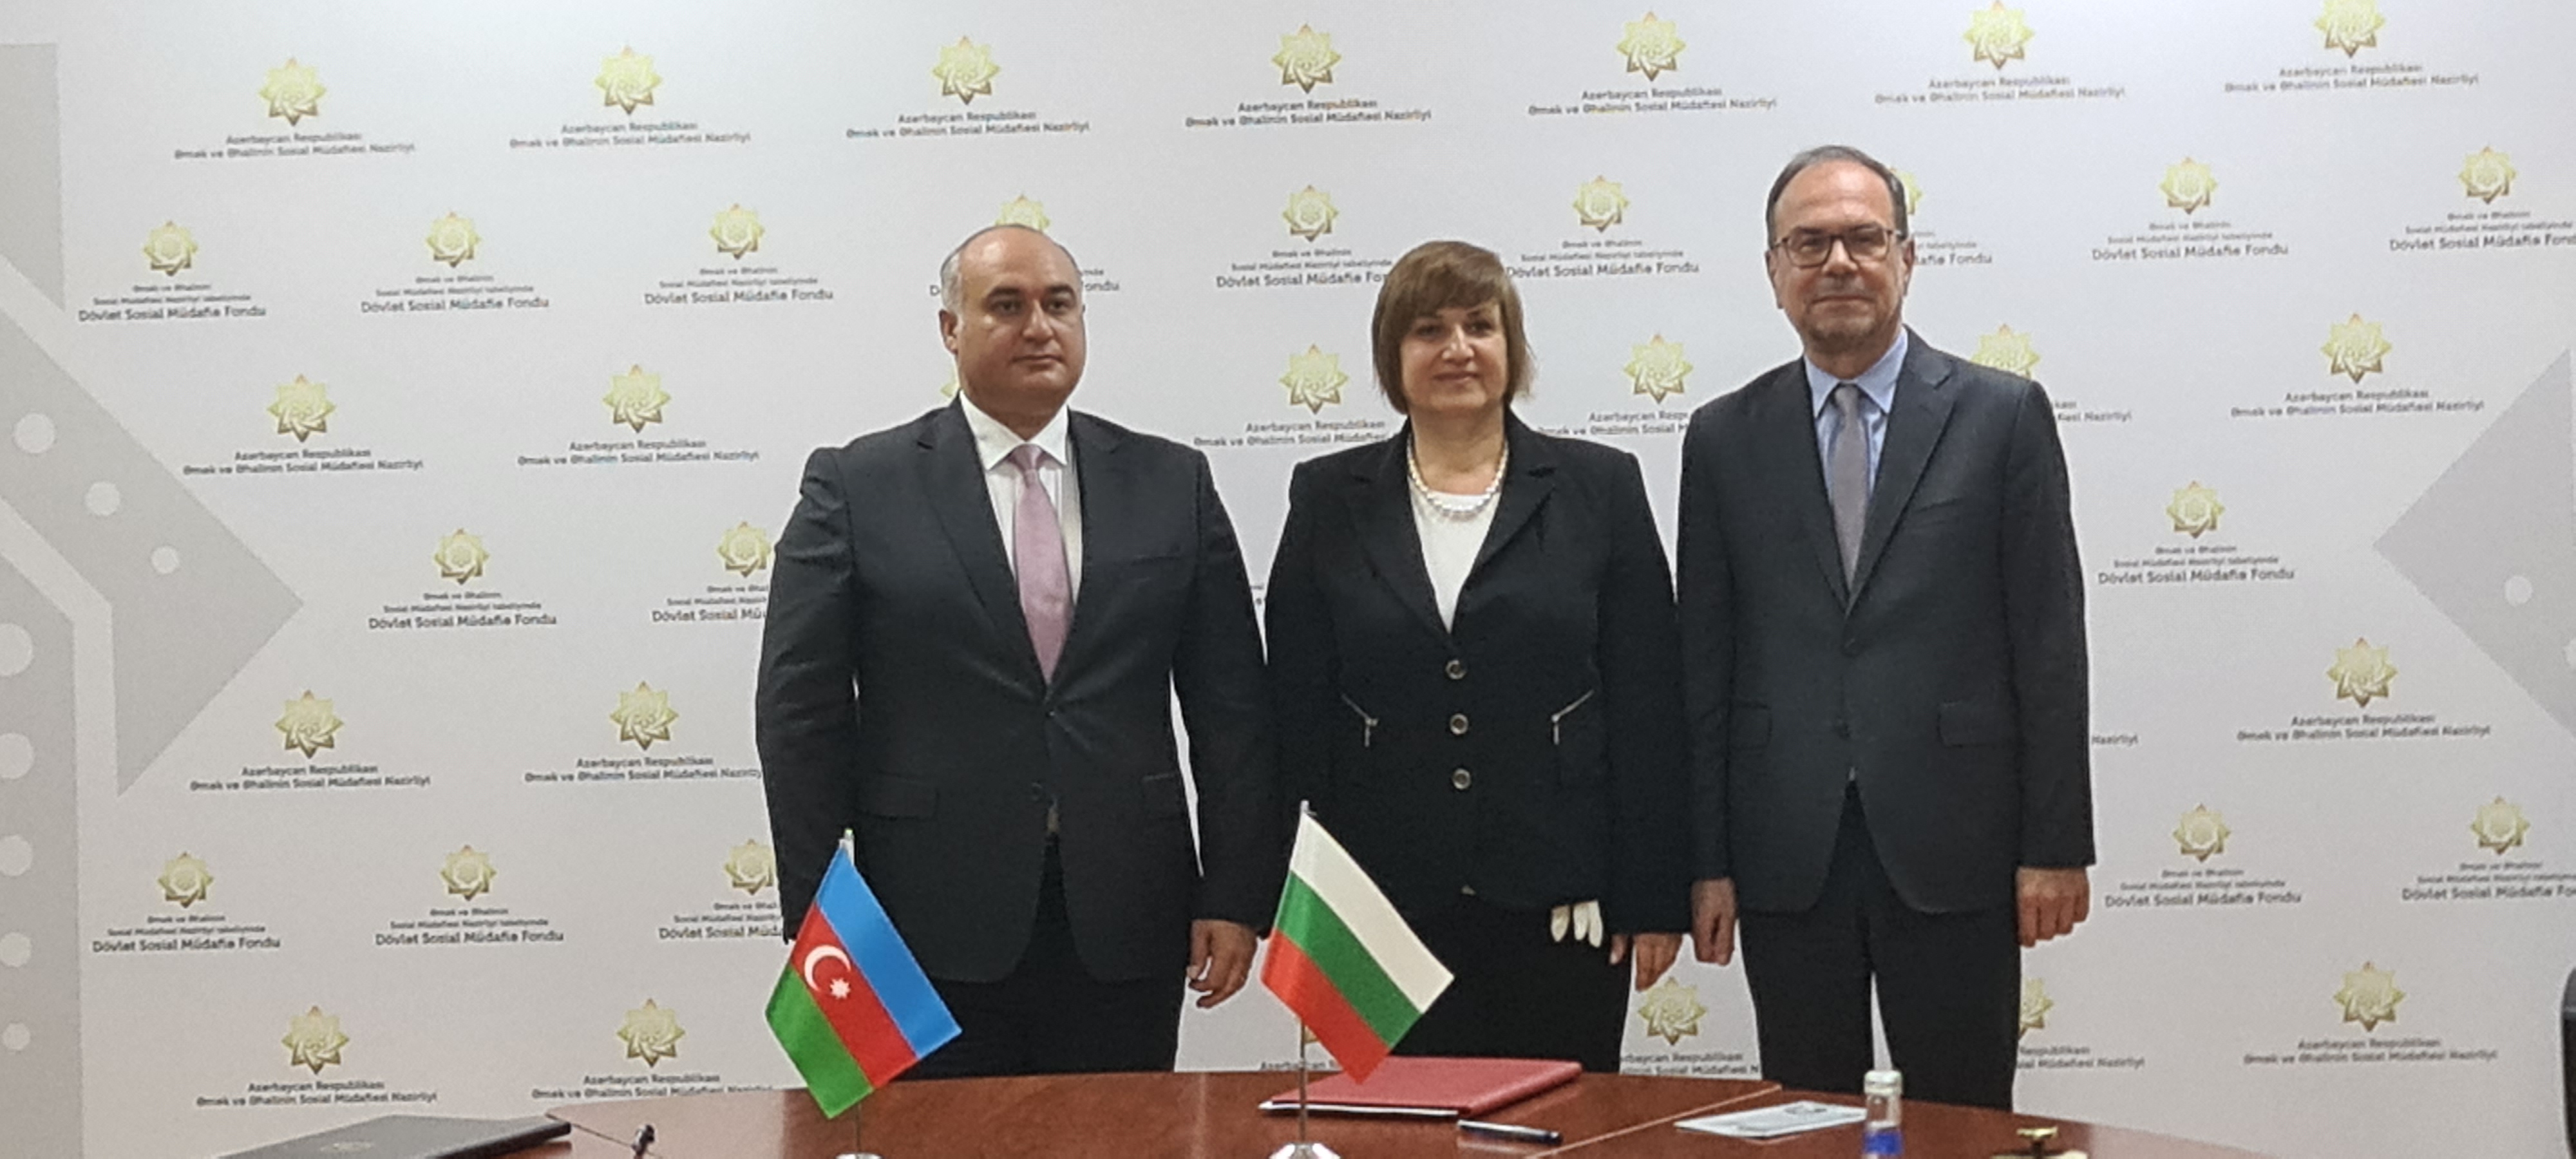 В Баку бе подписан Меморандум за сътрудничество в областта на социалноосигурителните услуги между НОИ на Република България и Фонда за социална закрила на Република Азербайджан